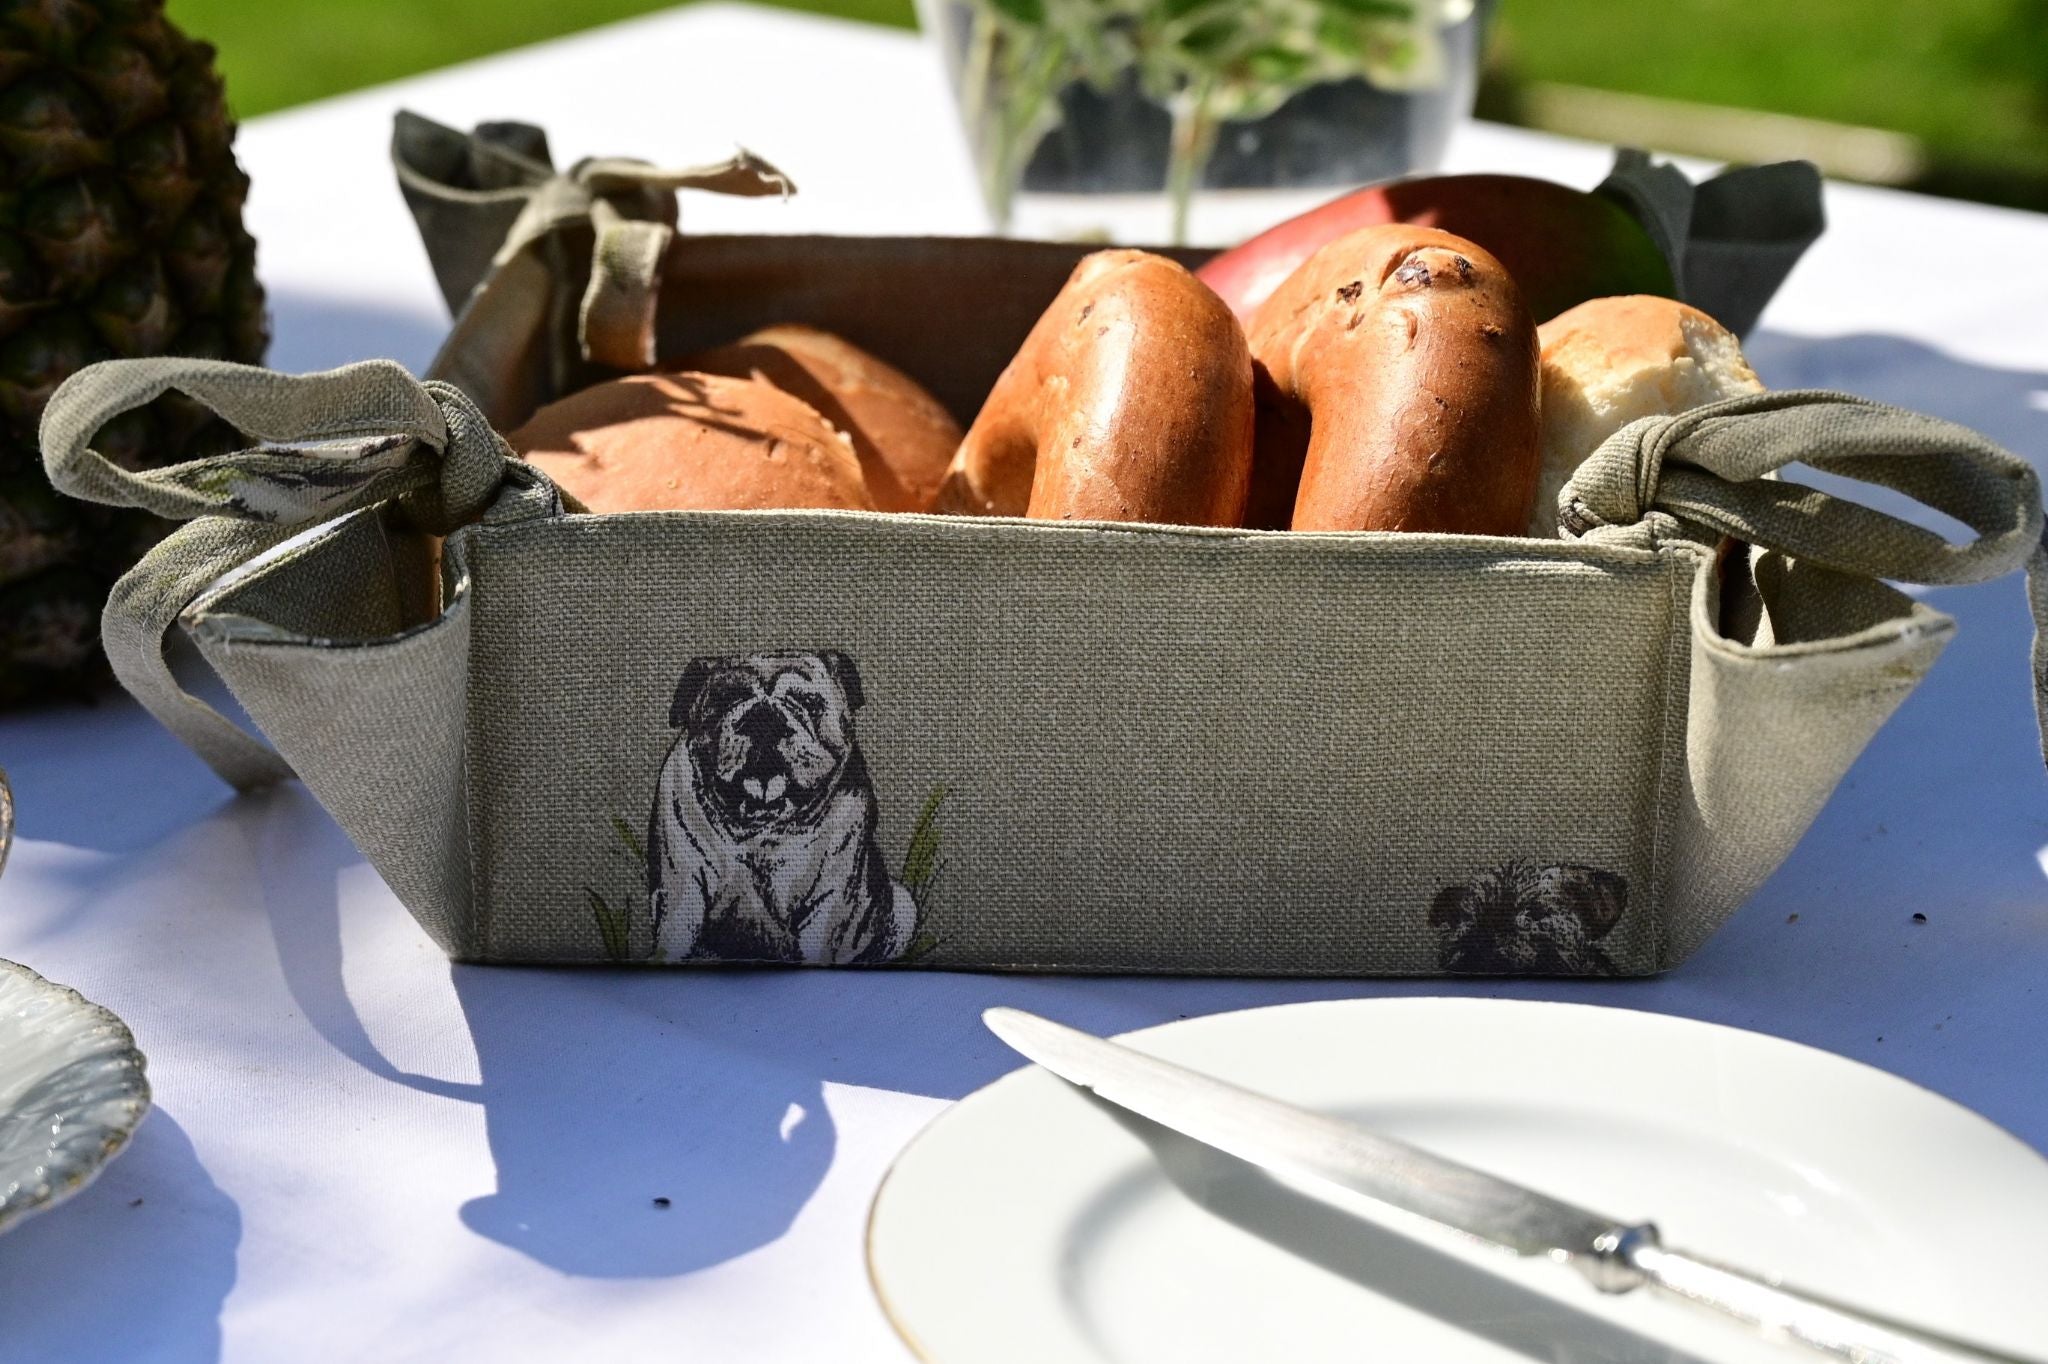 Bread Basket, Dogs on Oatmeal